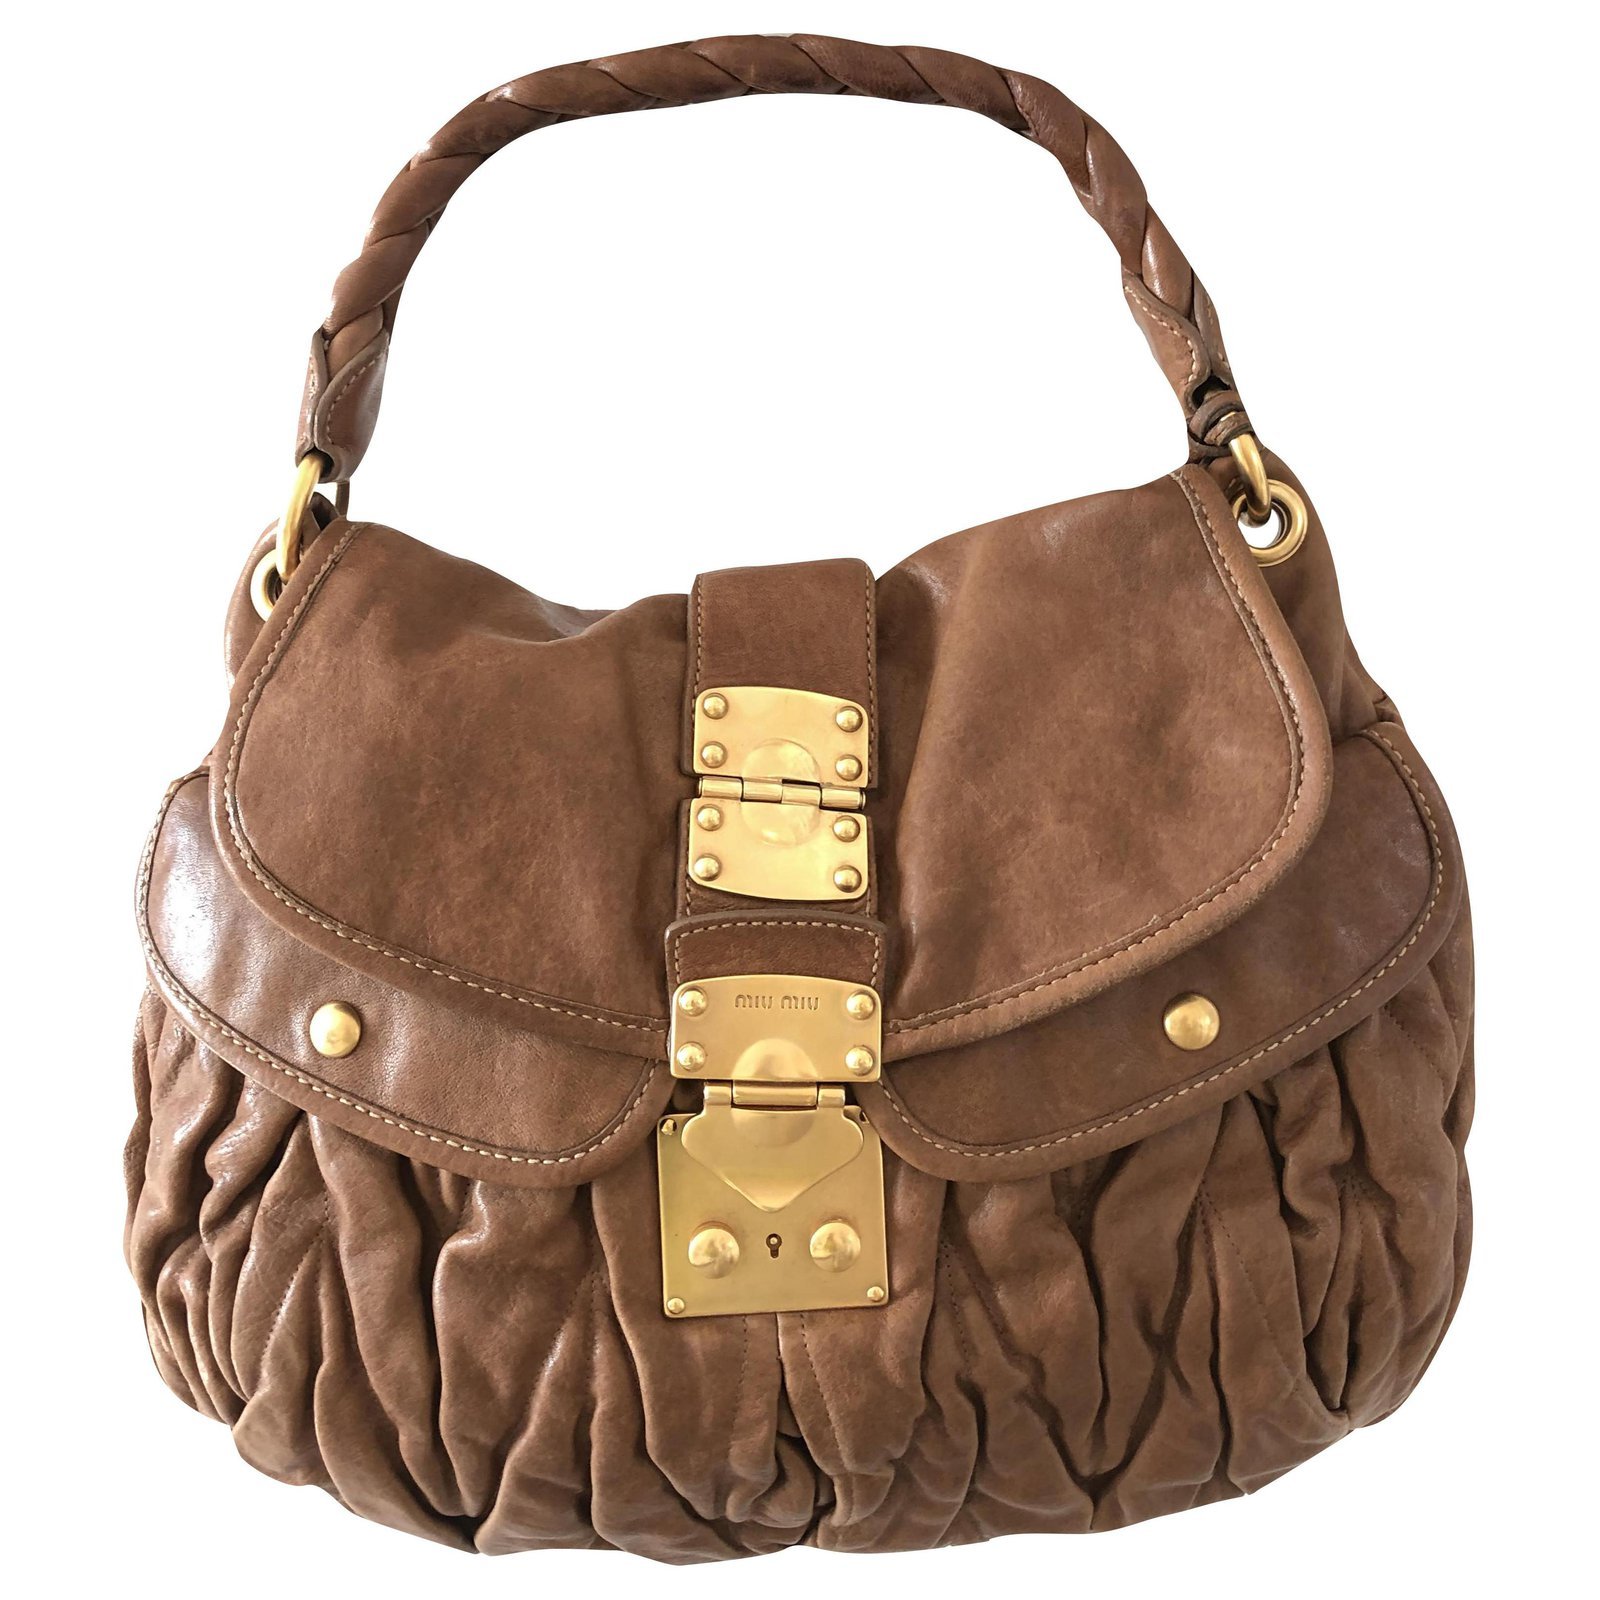 Miu Miu Coffer Matelassé Hobo Bag in Brown Leather.jpg